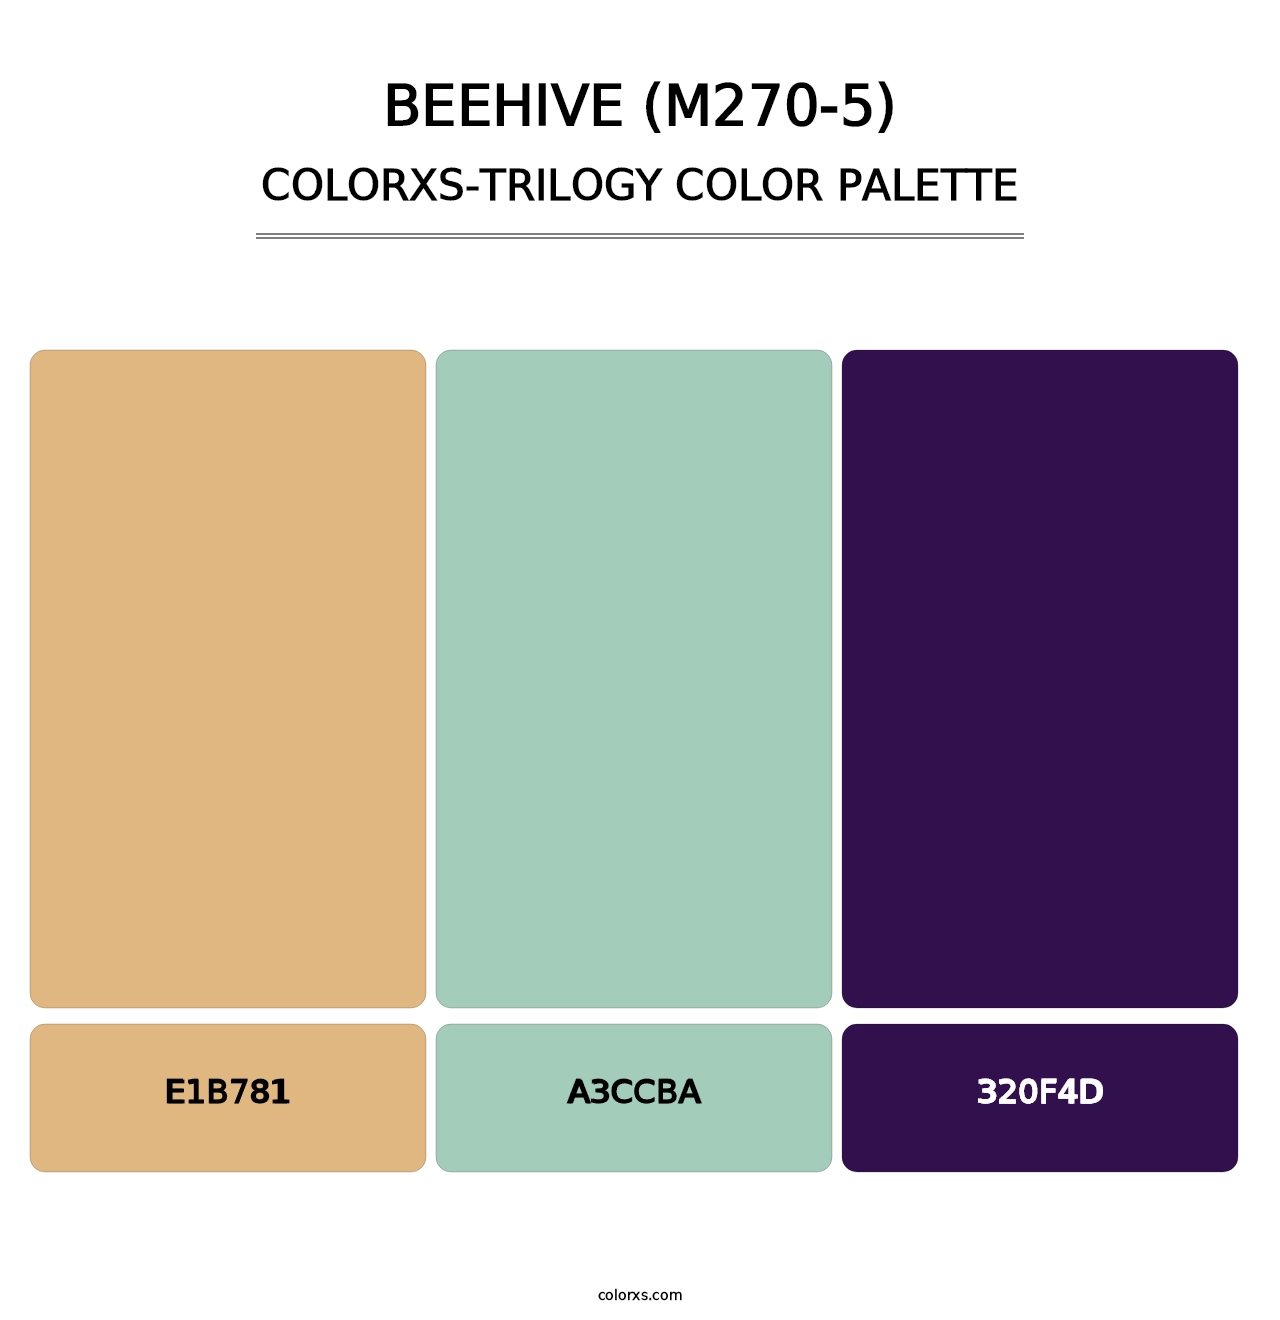 Beehive (M270-5) - Colorxs Trilogy Palette